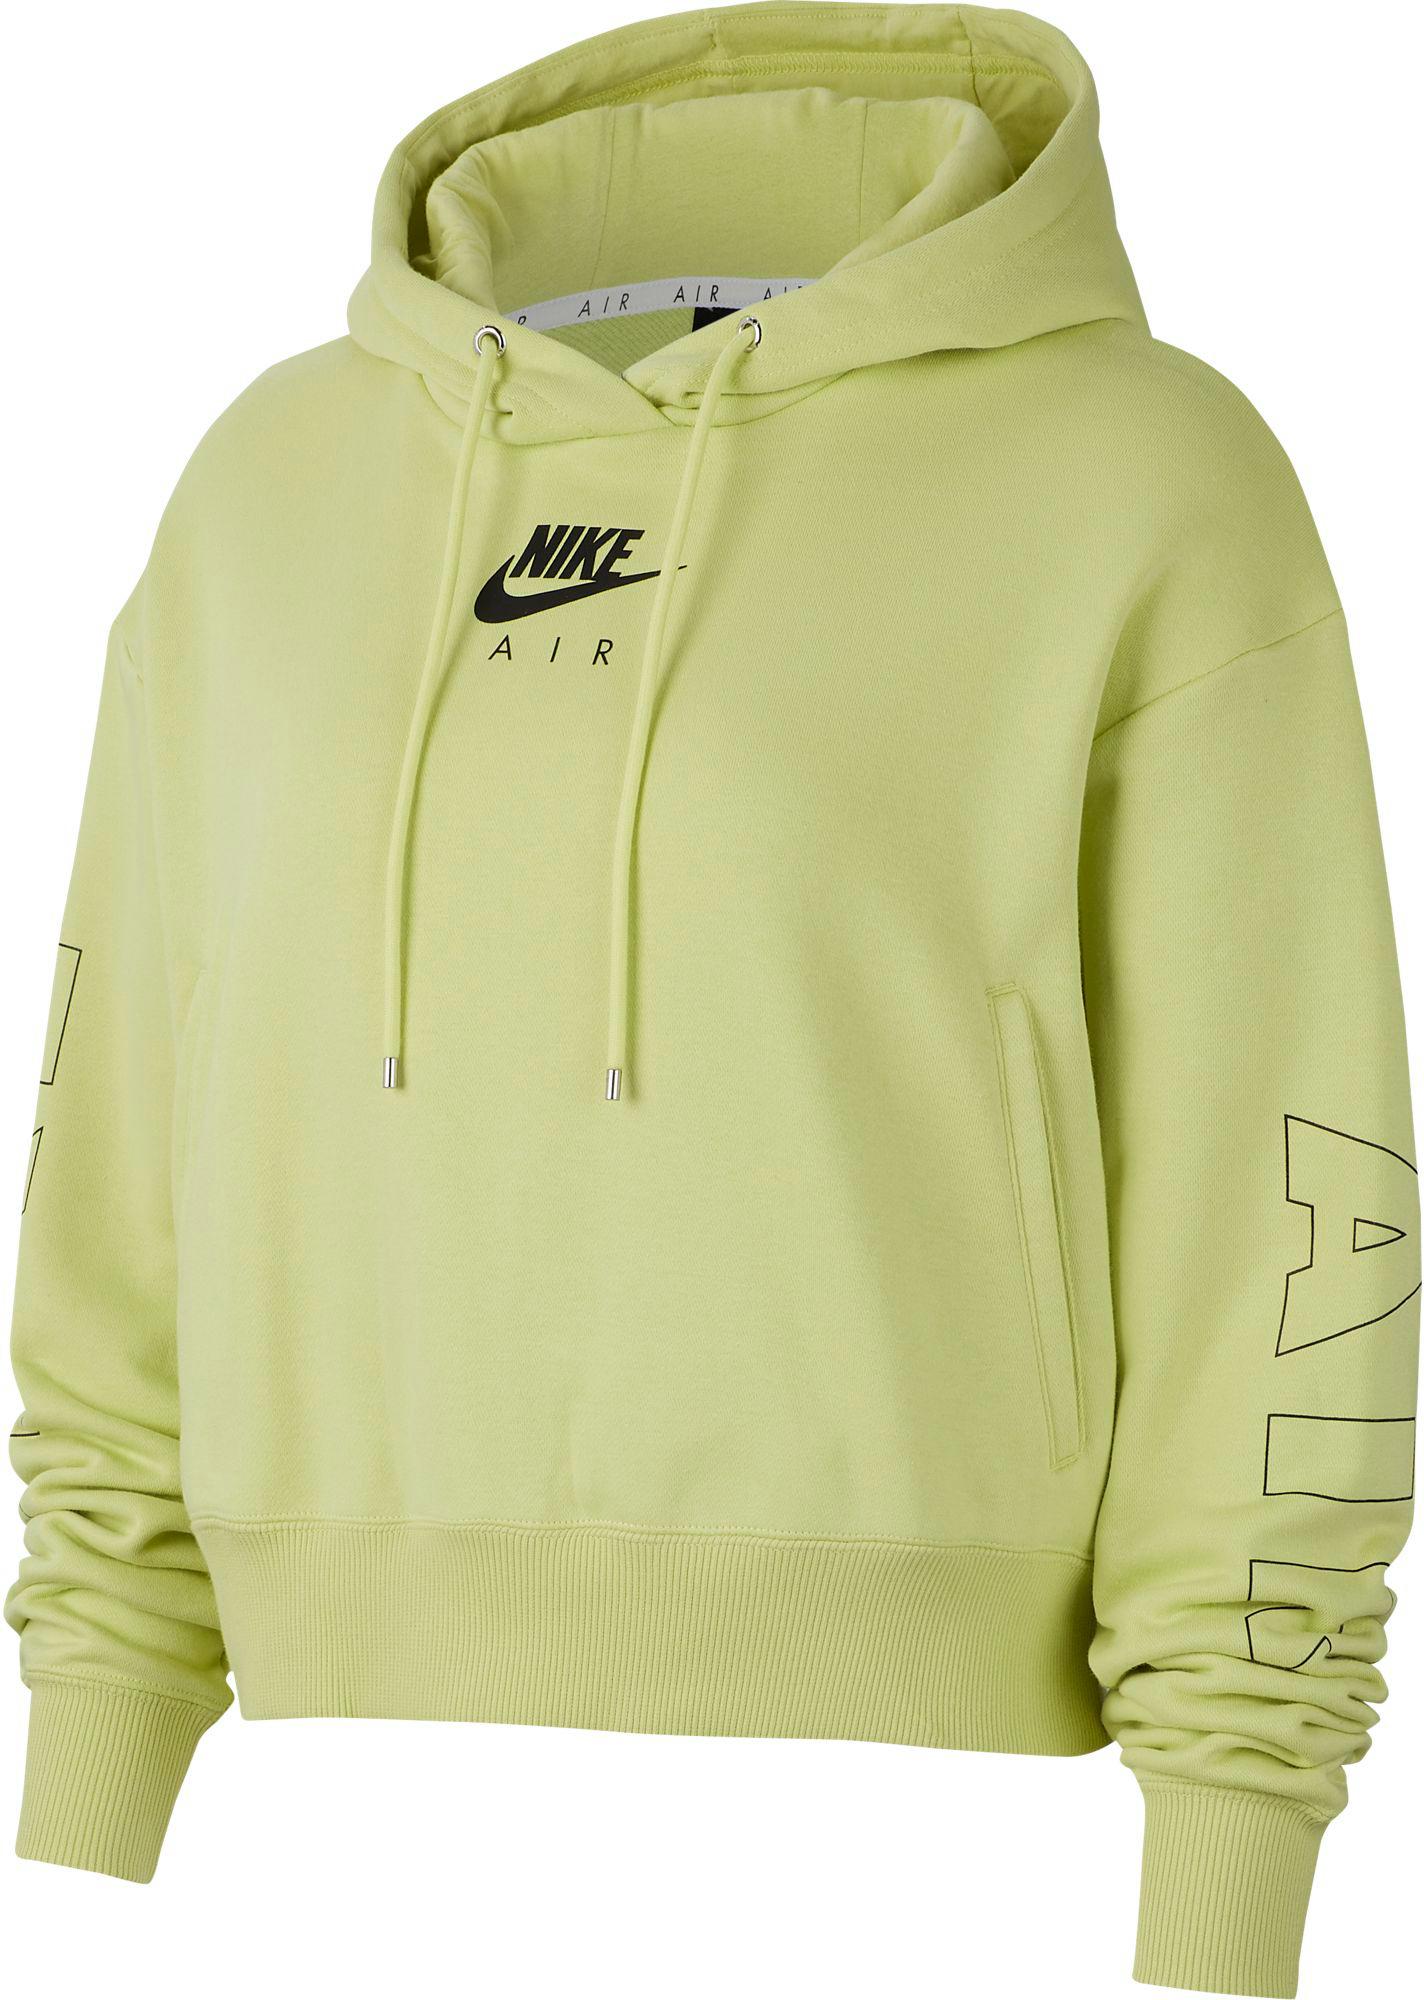 Nike Air Hoodie Damen Limelight Ice Silver Im Online Shop Von Sportscheck Kaufen